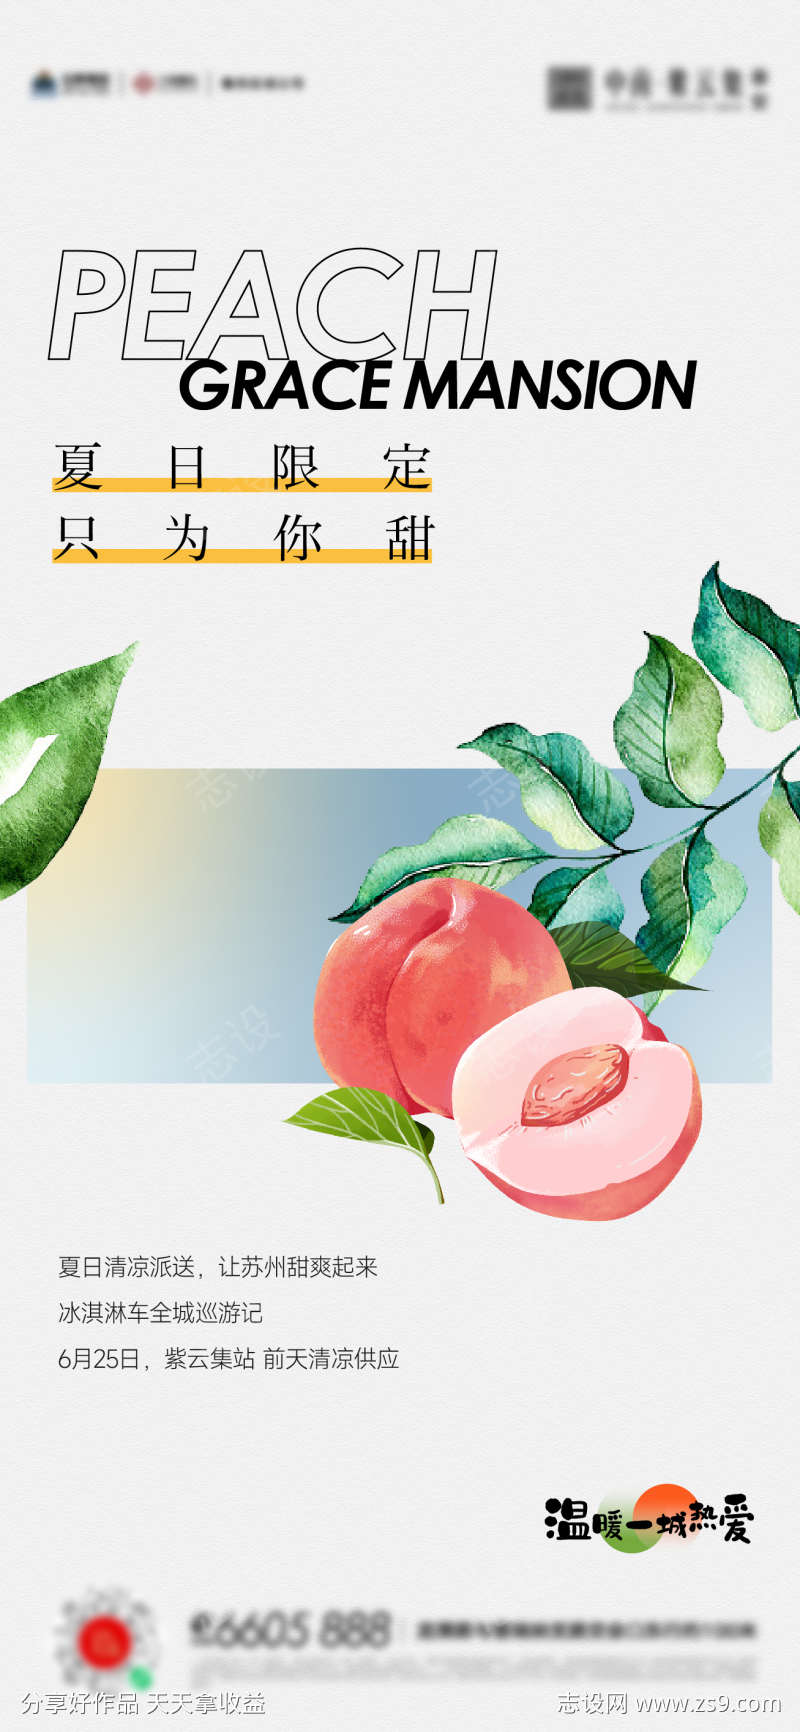 夏天桃子美食活动海报